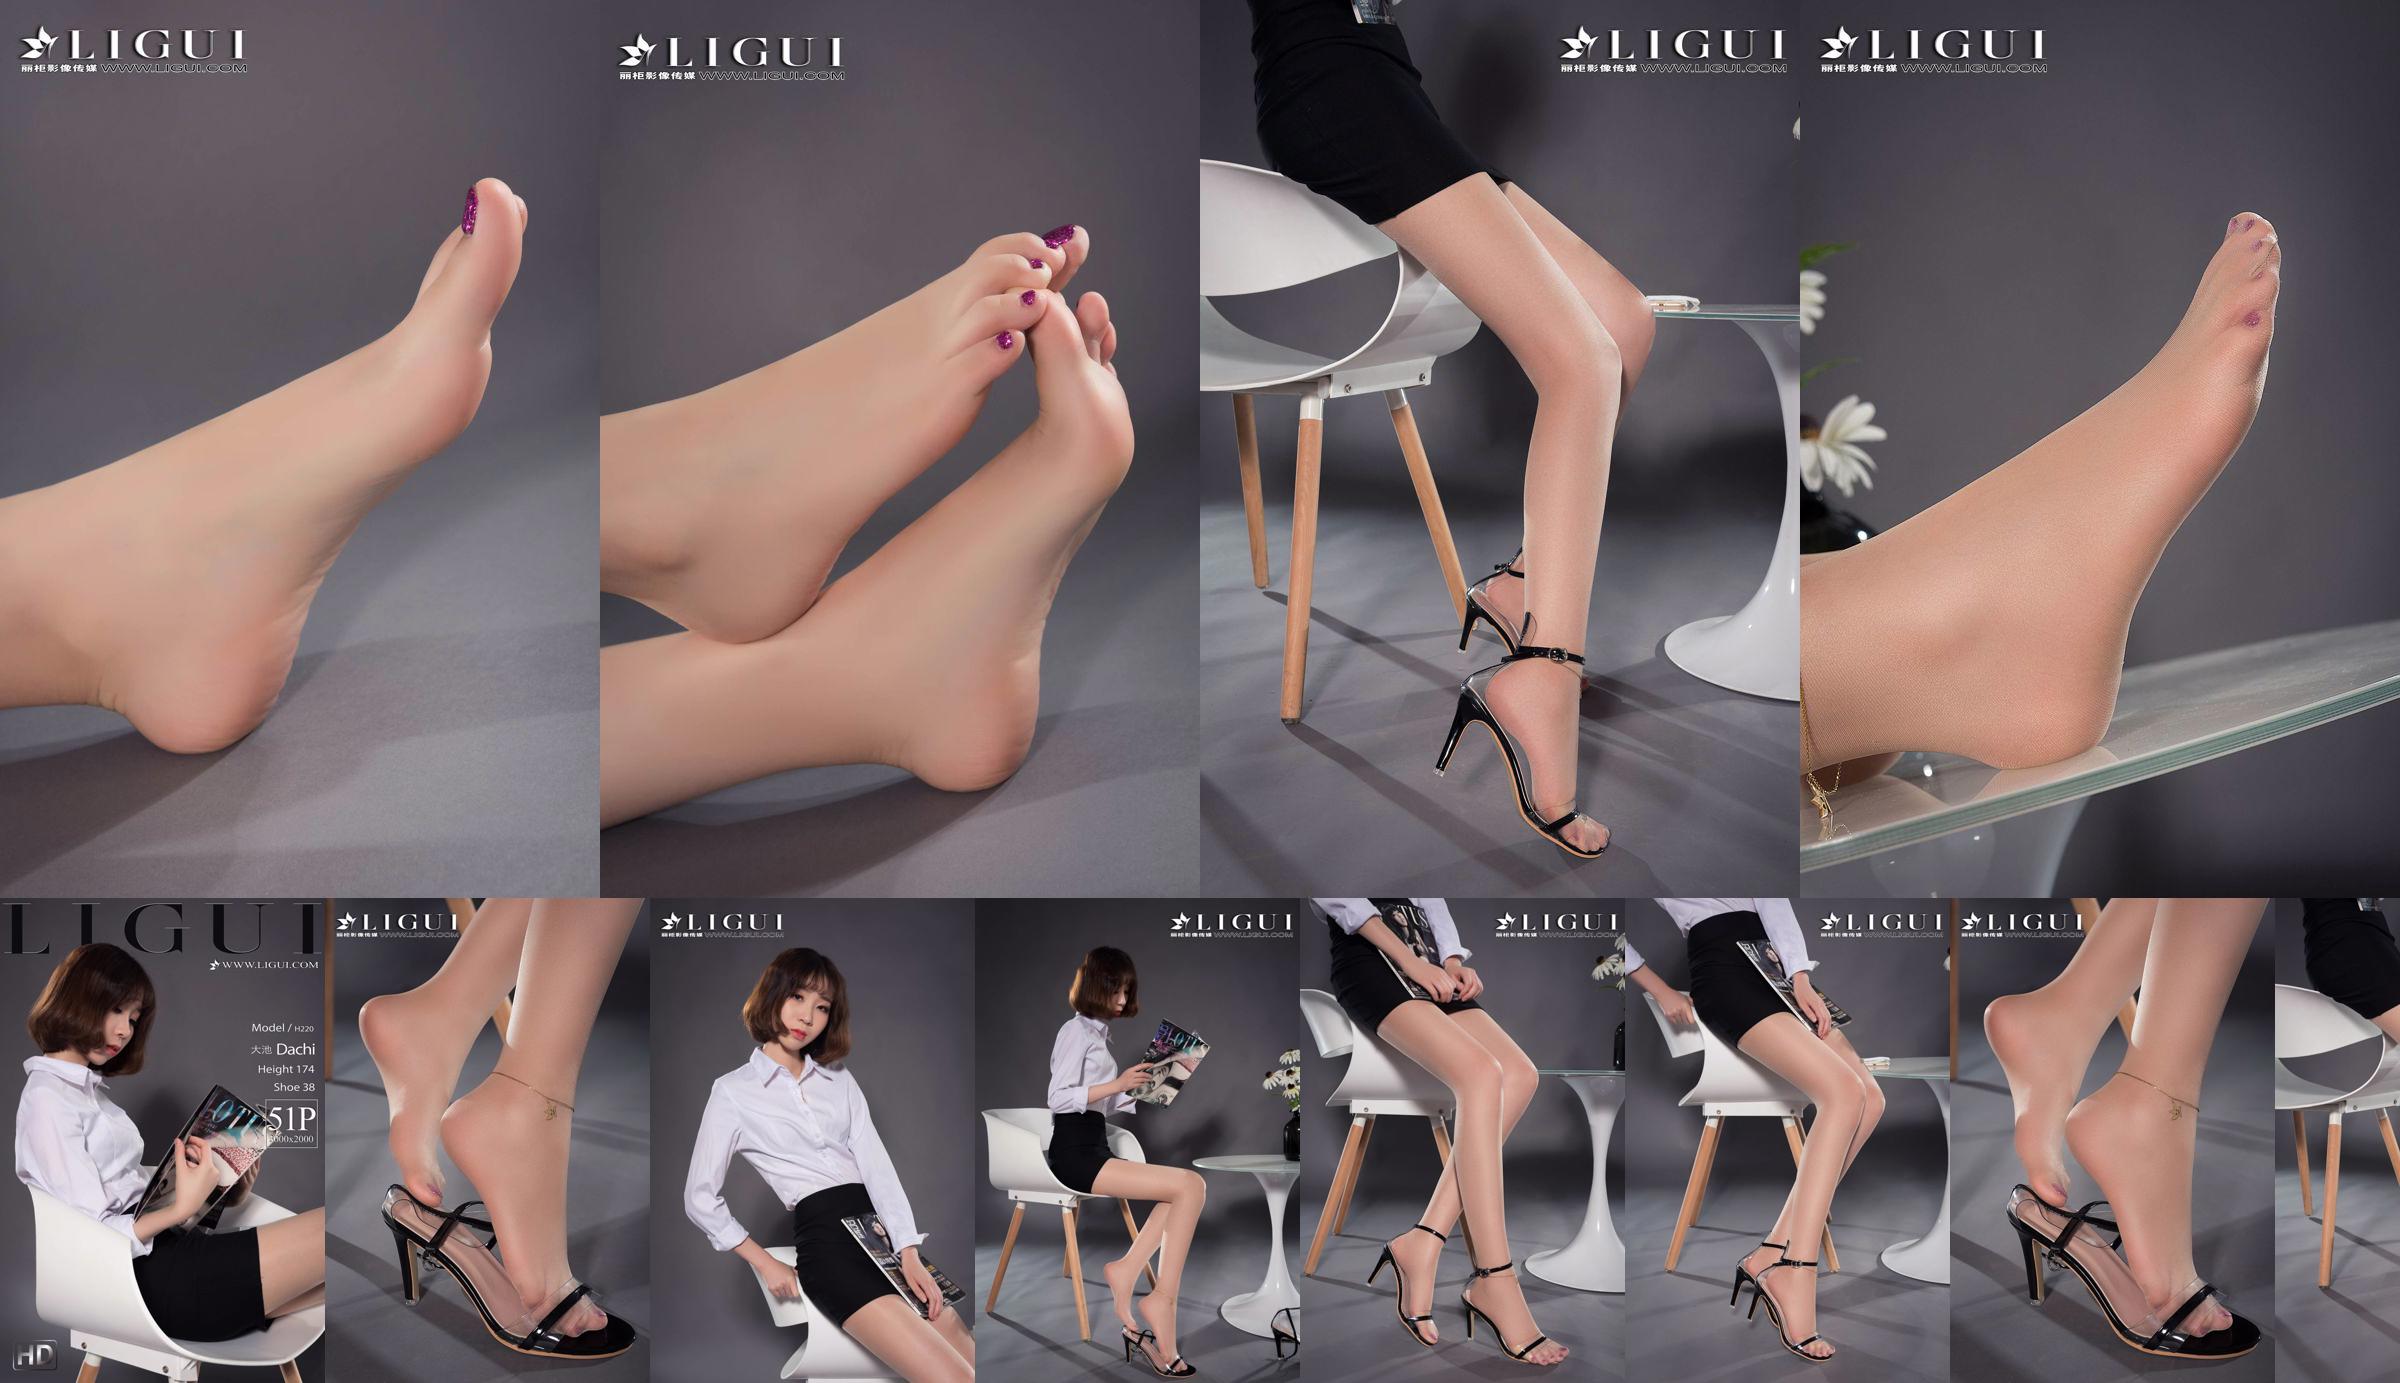 Người mẫu chân Oike "Heo với giày cao gót CV" [Ligui Ligui] Vẻ đẹp Internet No.24ffca Trang 6